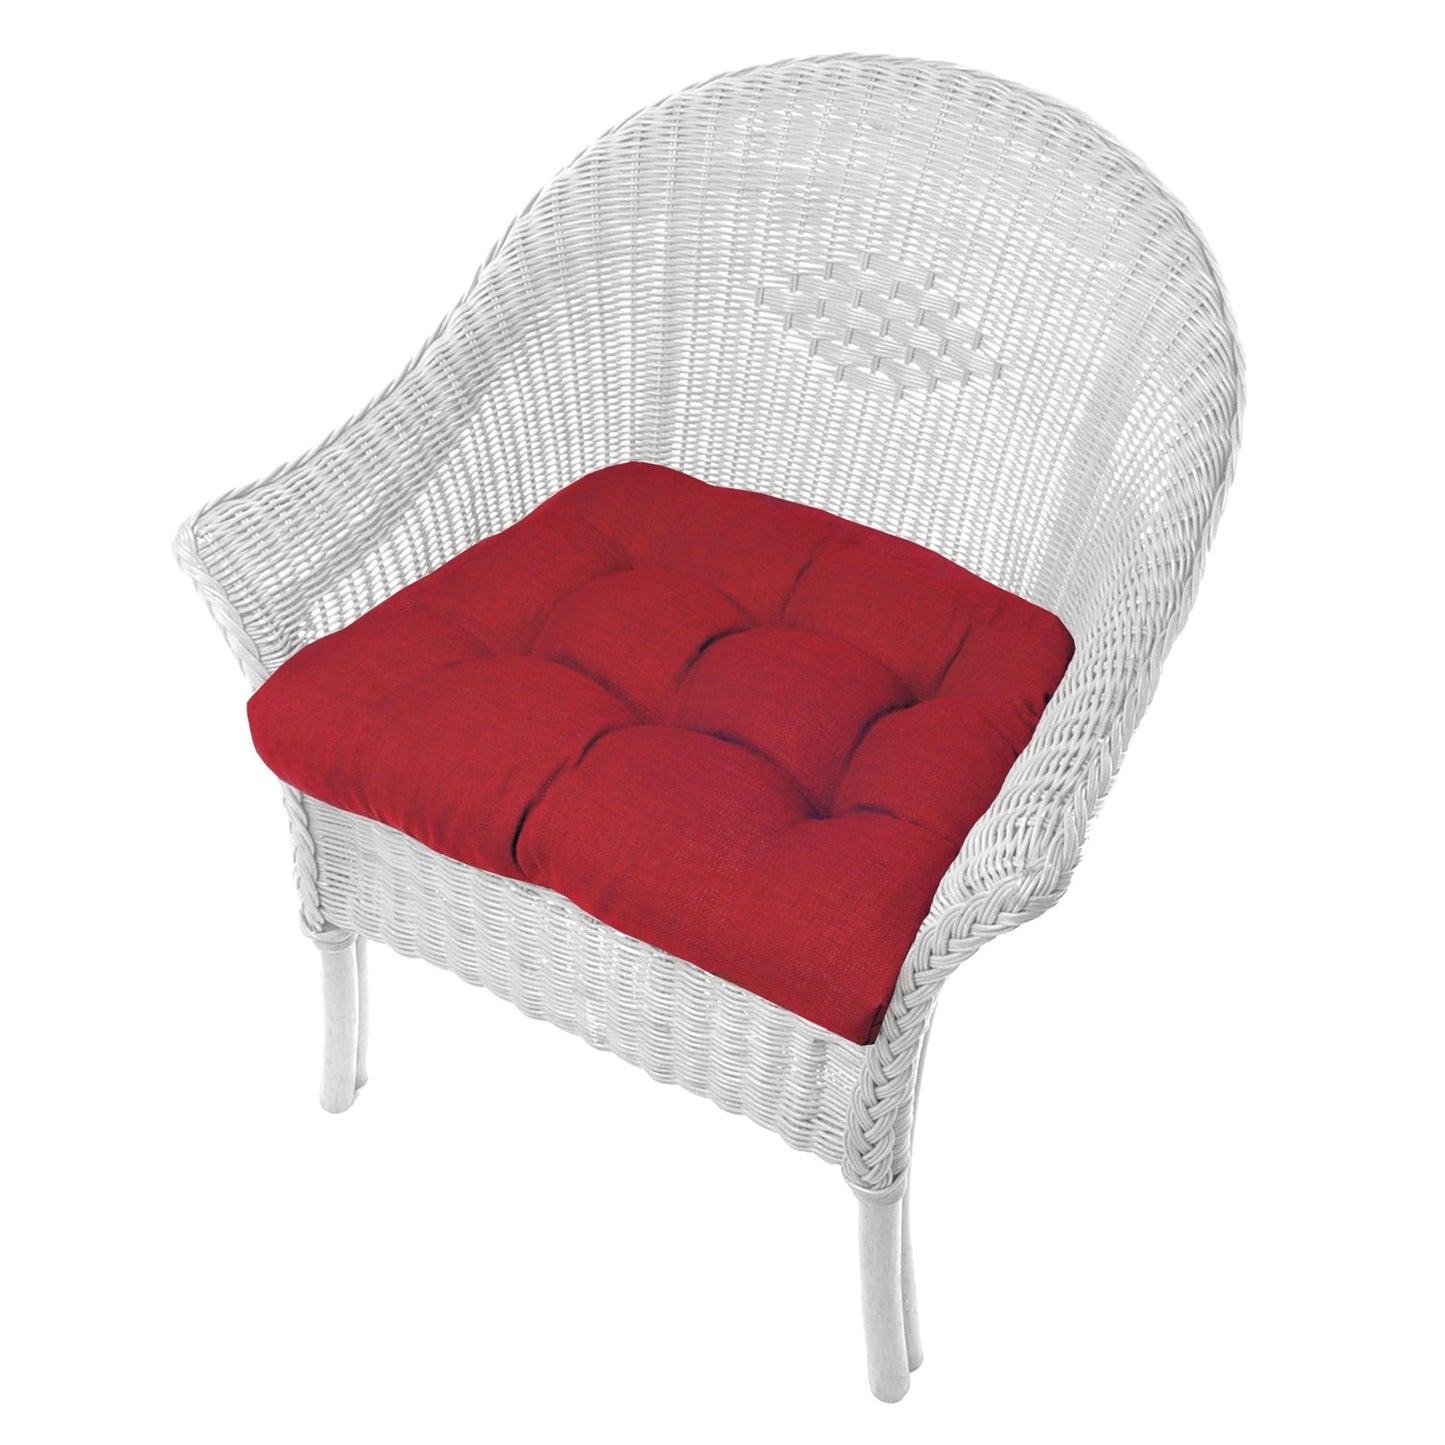 Rave Red Wicker Chair Cushion | Barnett Home Decor